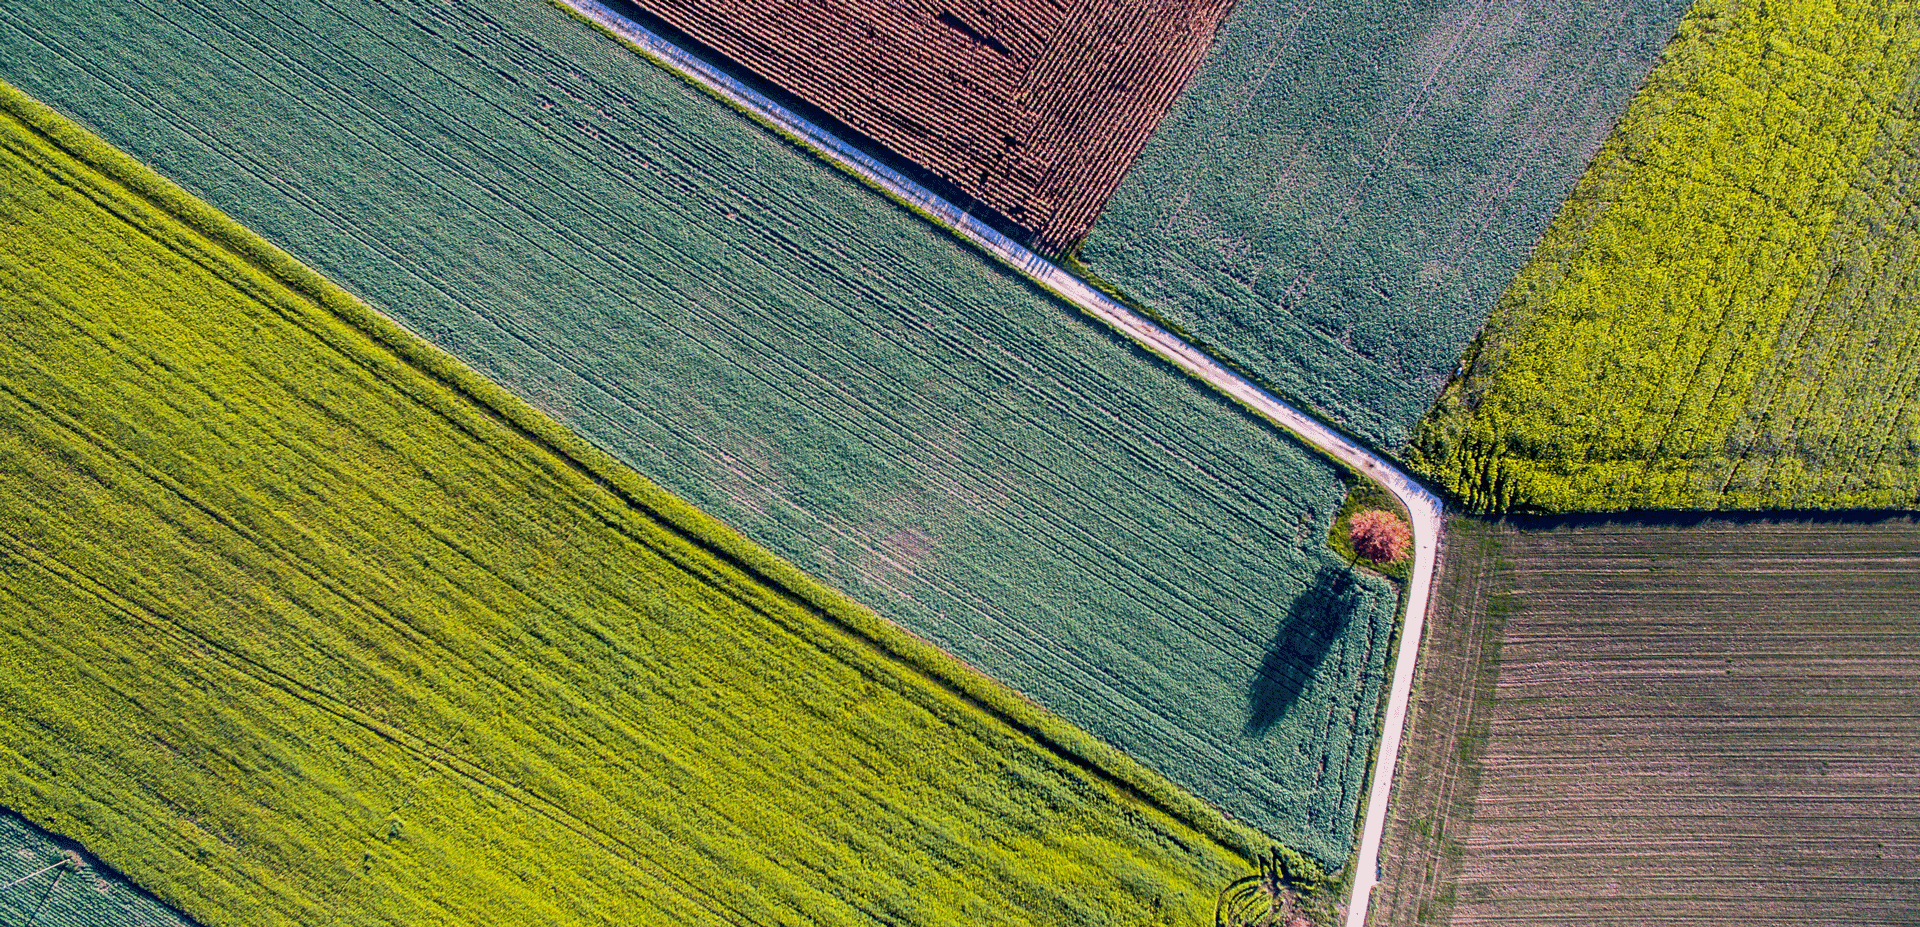 Aerial photo of farmland